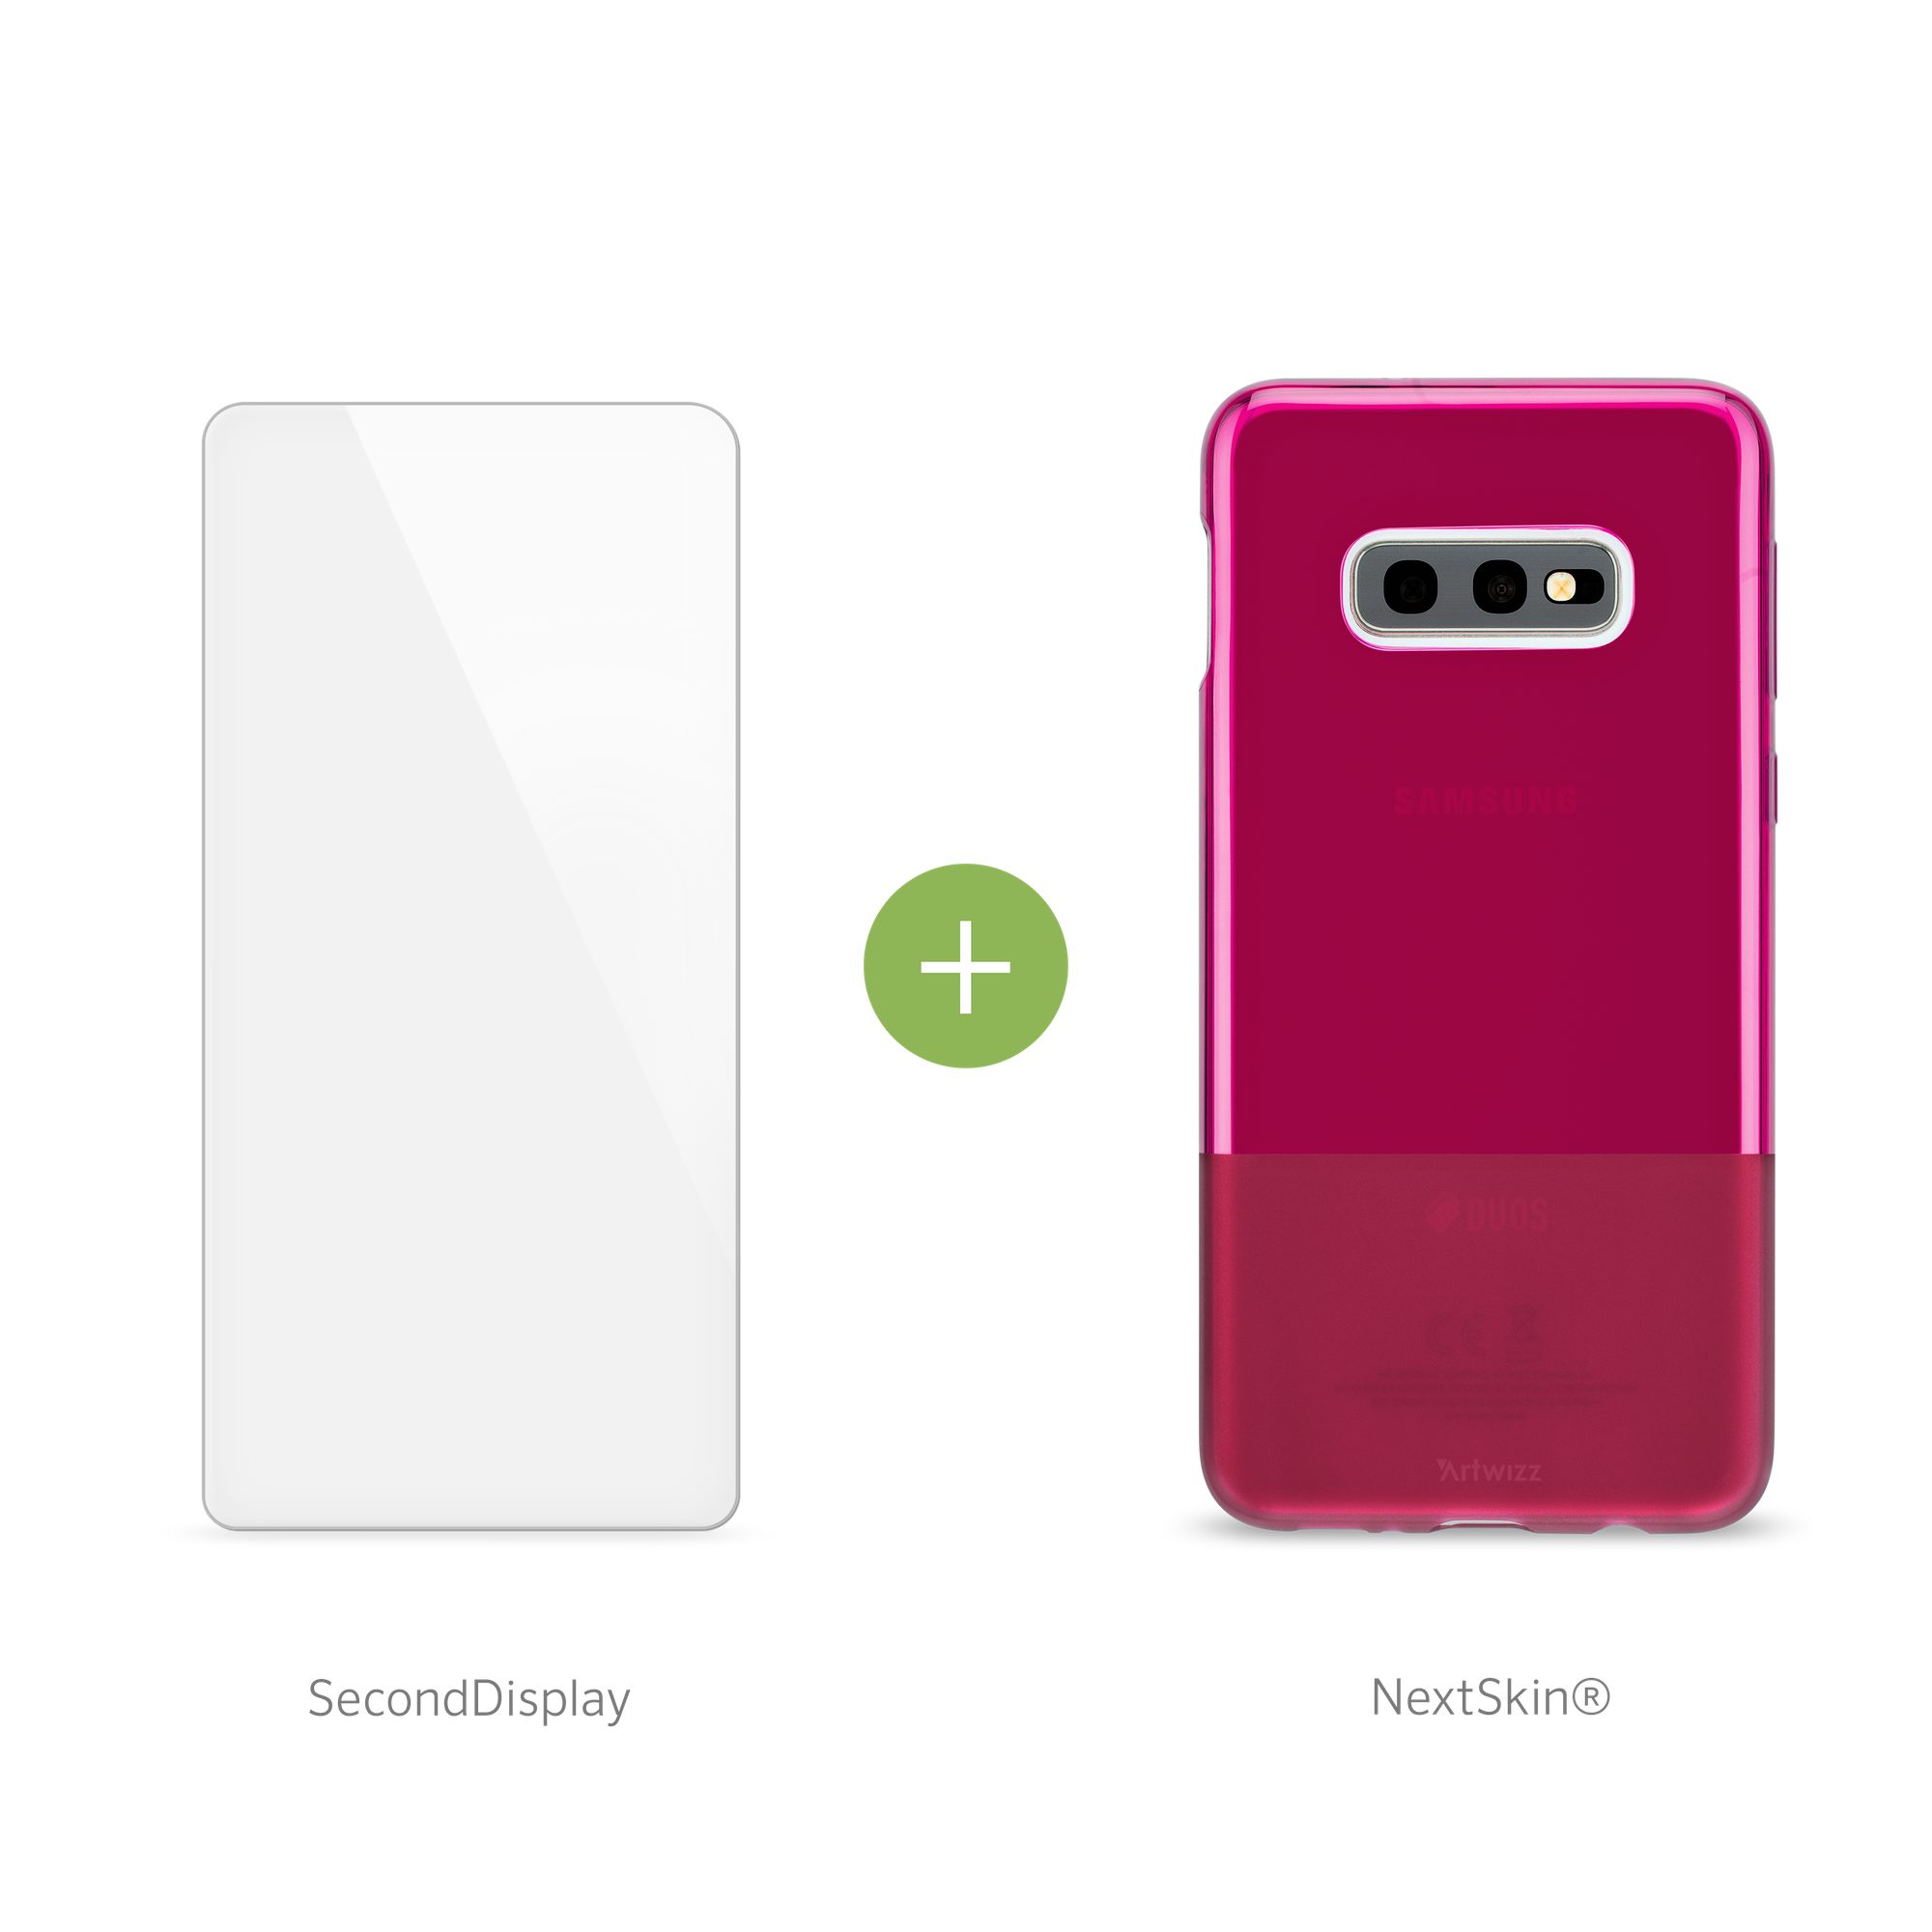 Artwizz Smartphone-Hülle Artwizz NextSkin + SecondDisplay Set geeignet für [Galaxy S10e] - Ultra-dünne, elastische Schutzhülle + Displayschutz aus Sicherheitsglas - Berry